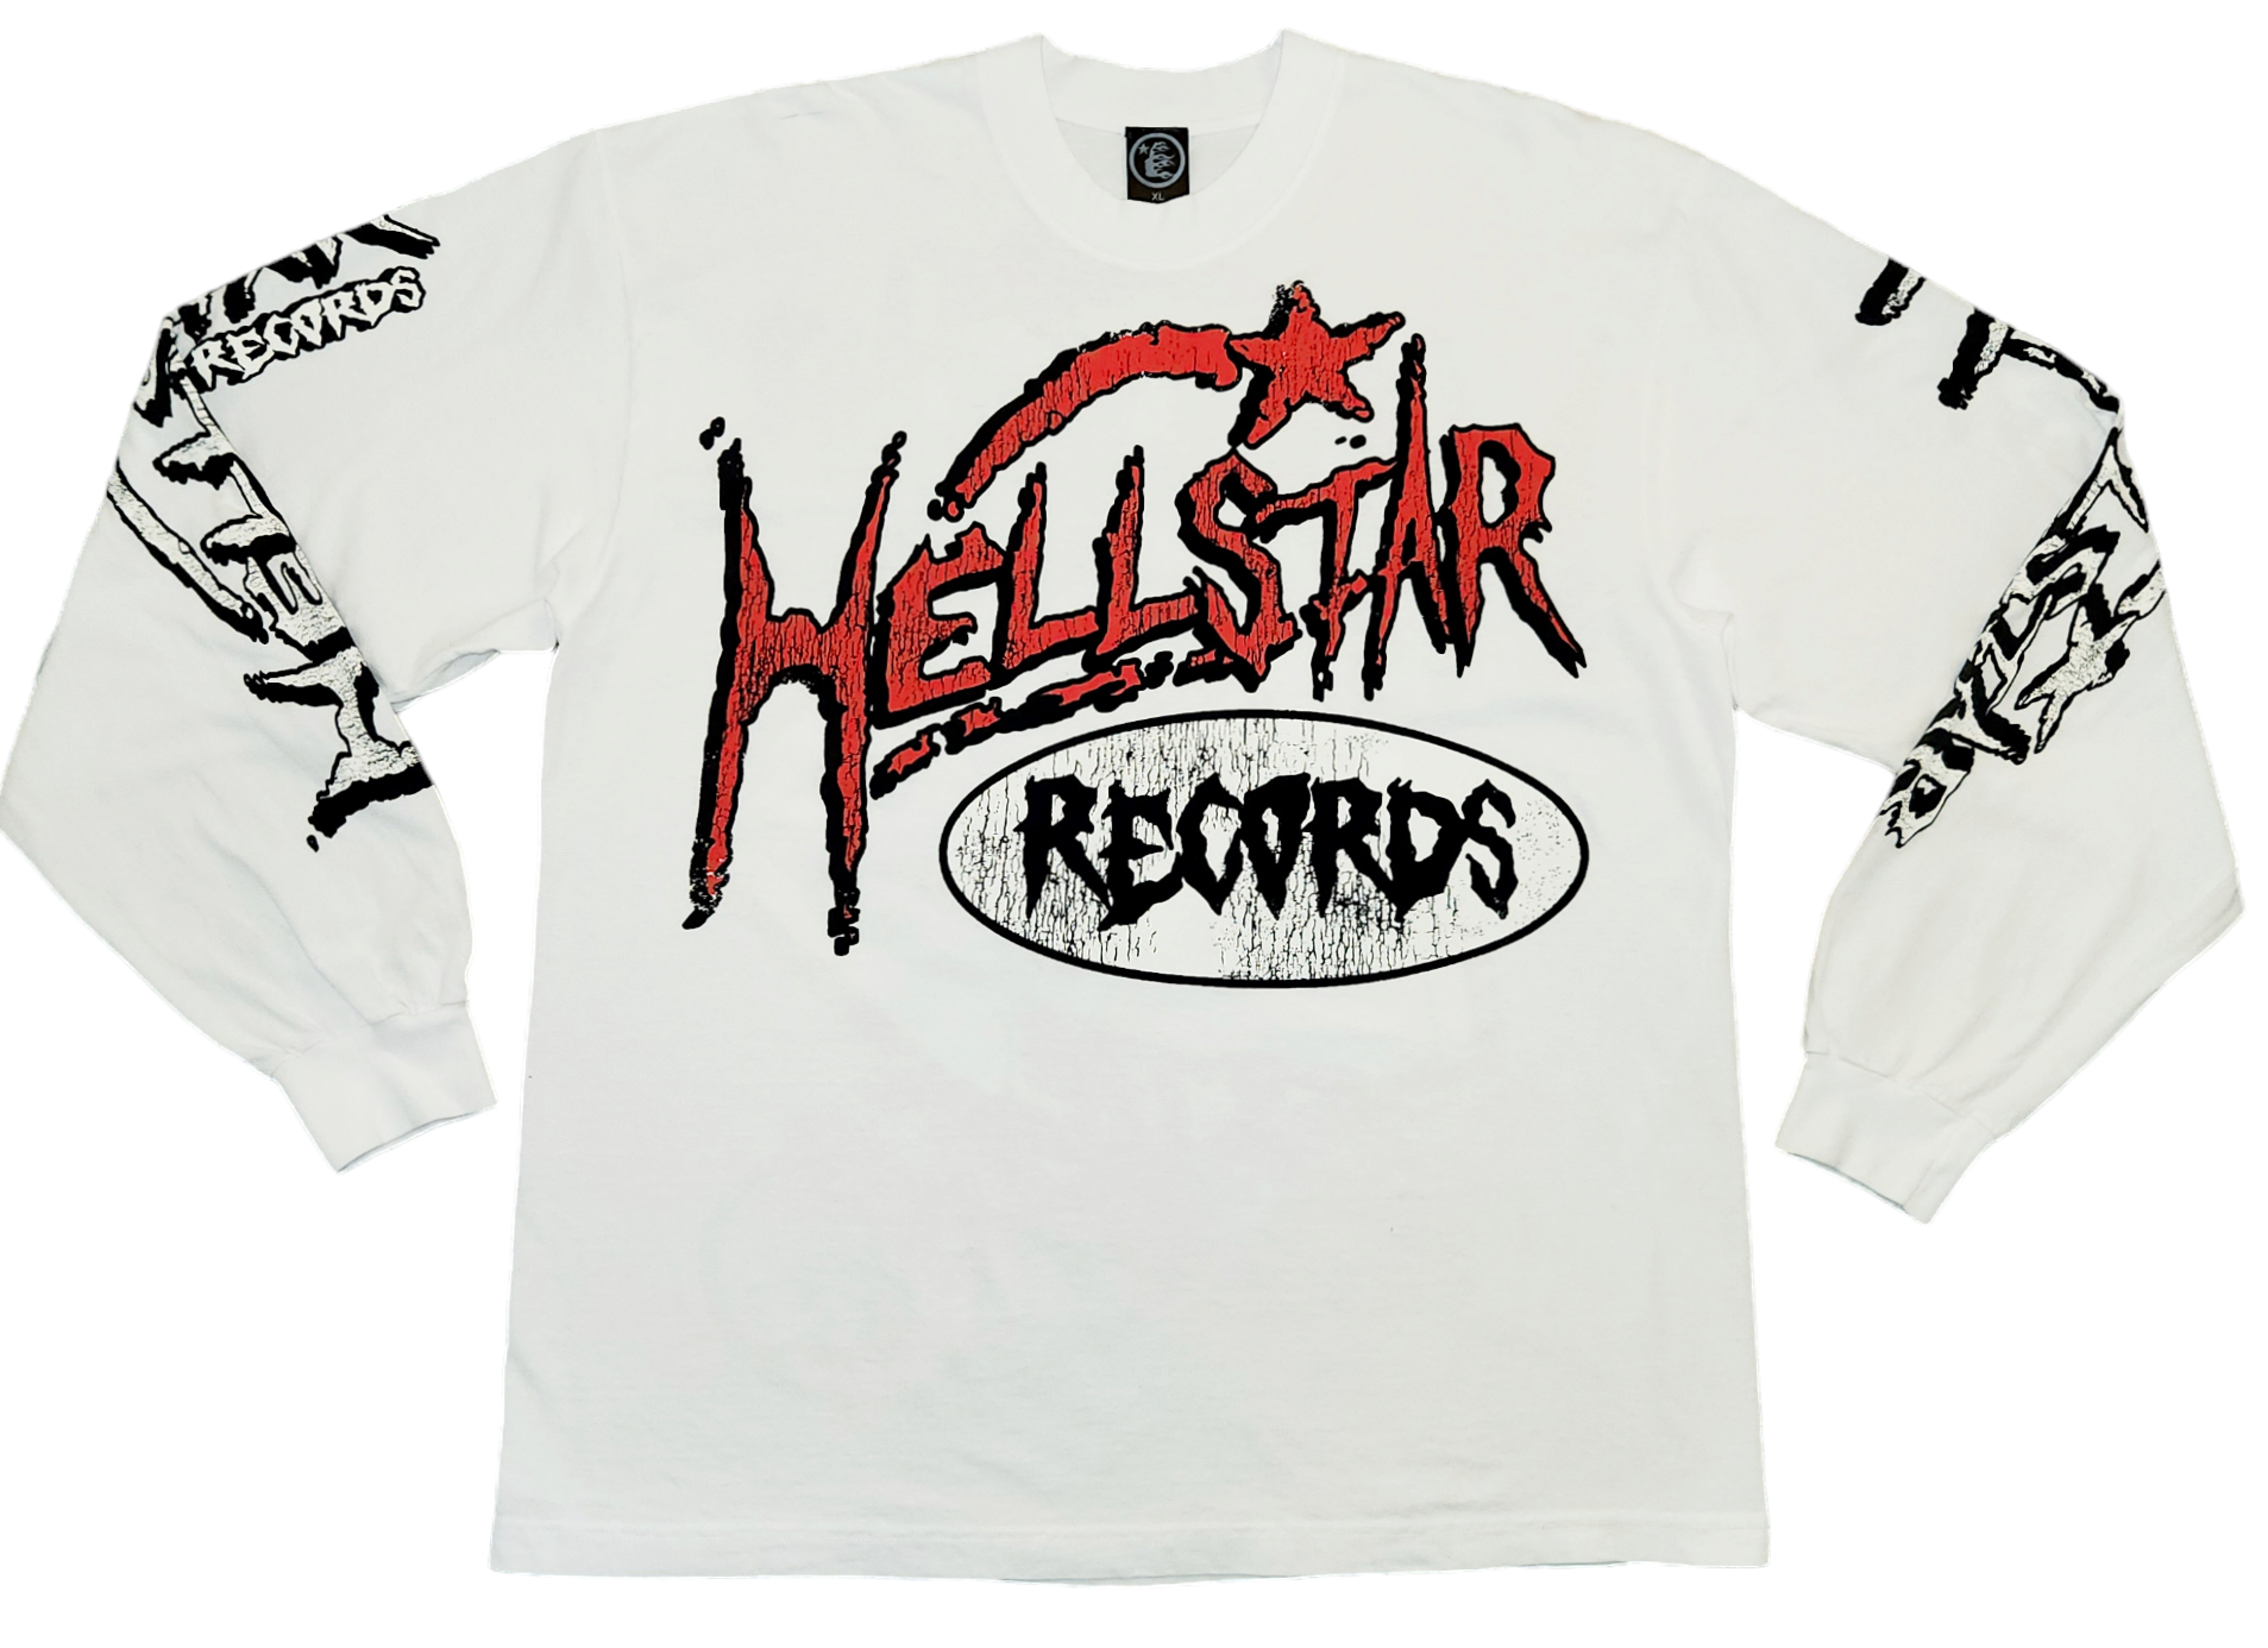 Hellstar "Records" L/S Shirt